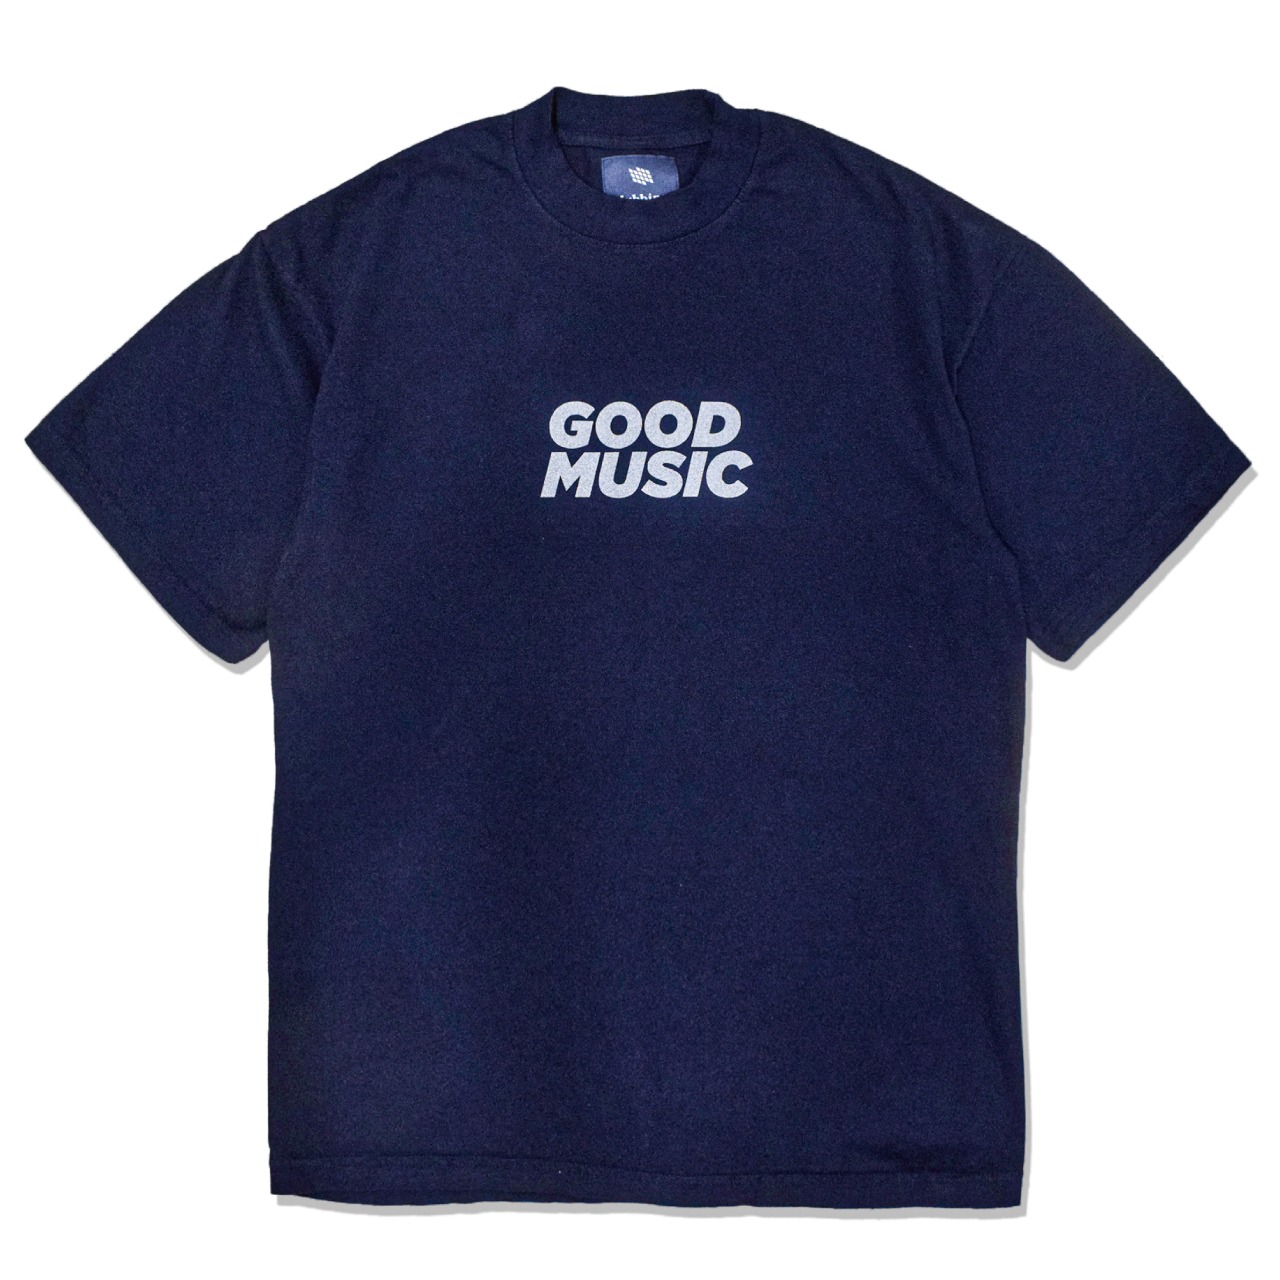 Good "DUB" Tee Shirts - Navy